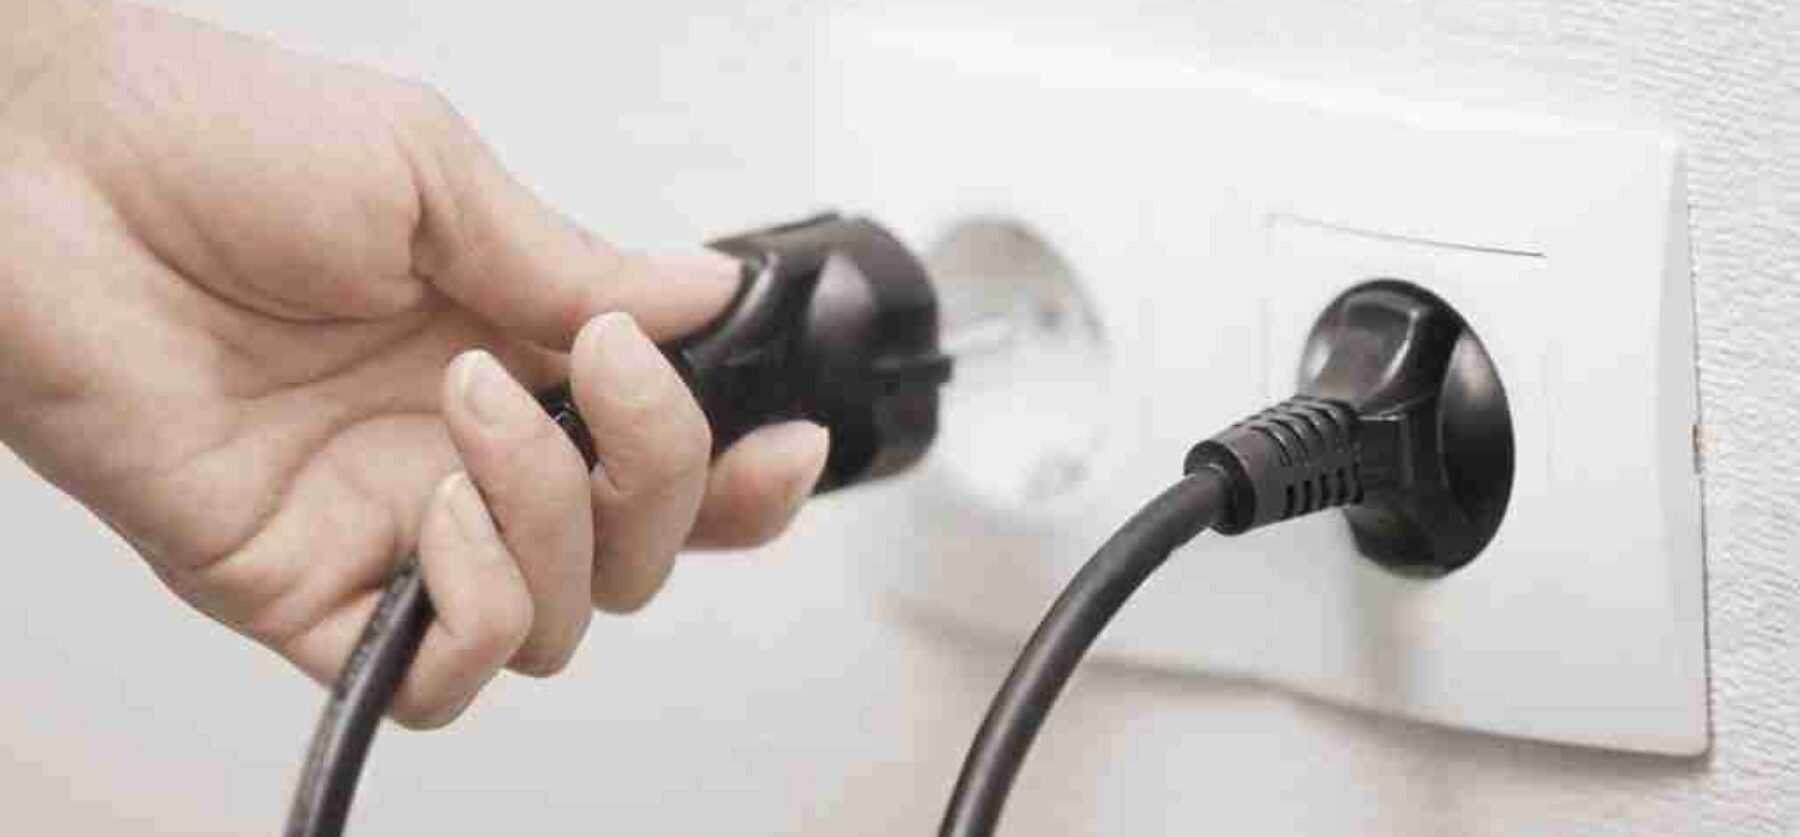 Plug and unplug power Strips